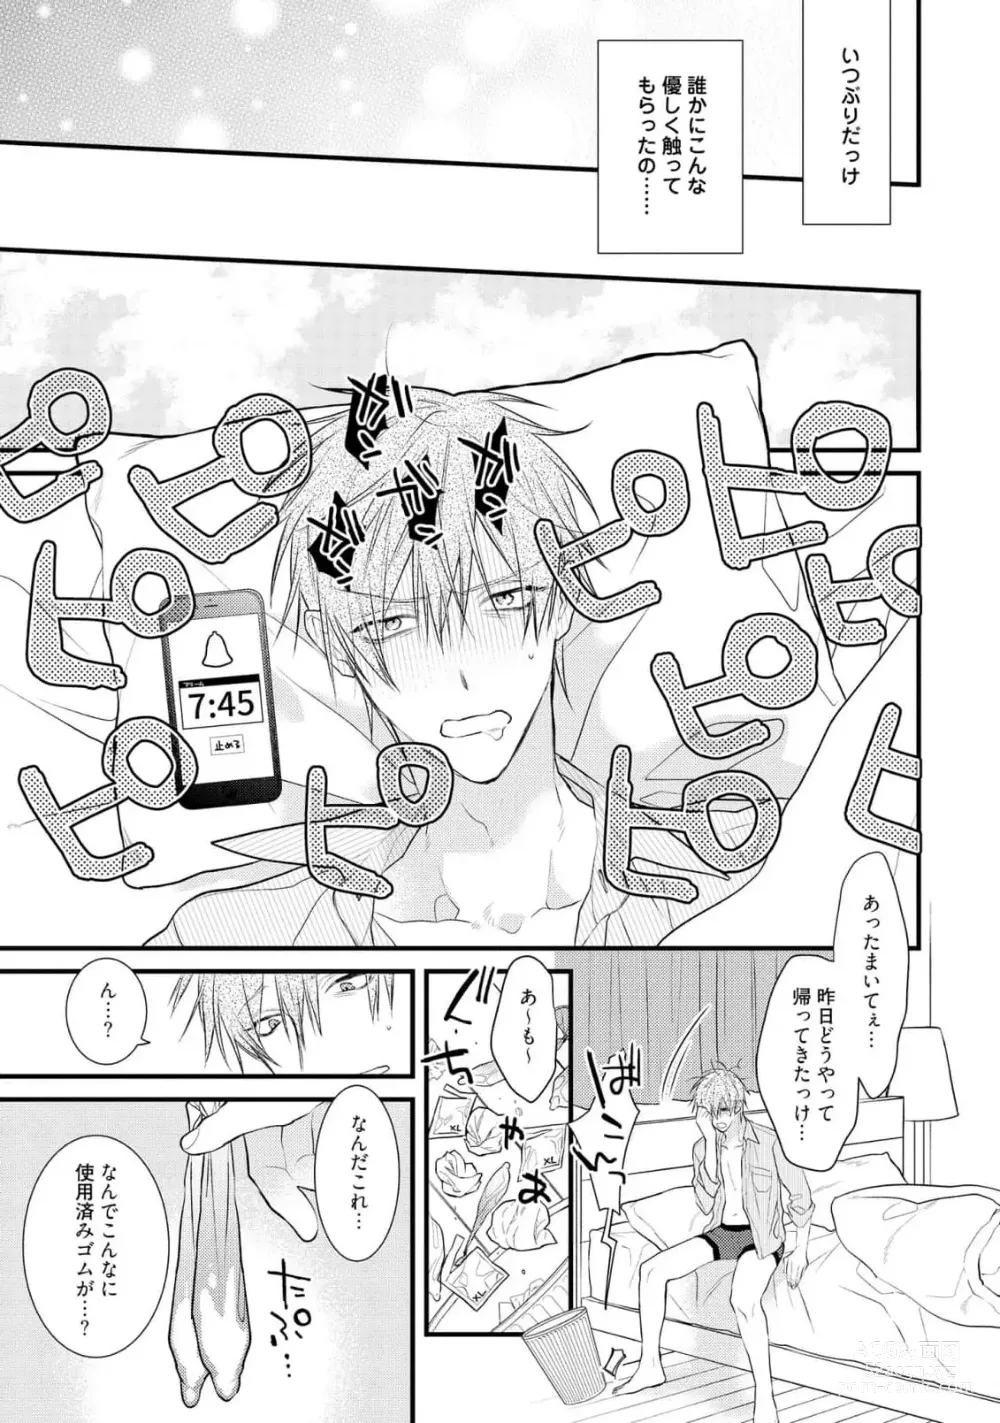 Page 13 of manga Ecchi wa shuu 7 Kibou Desu!